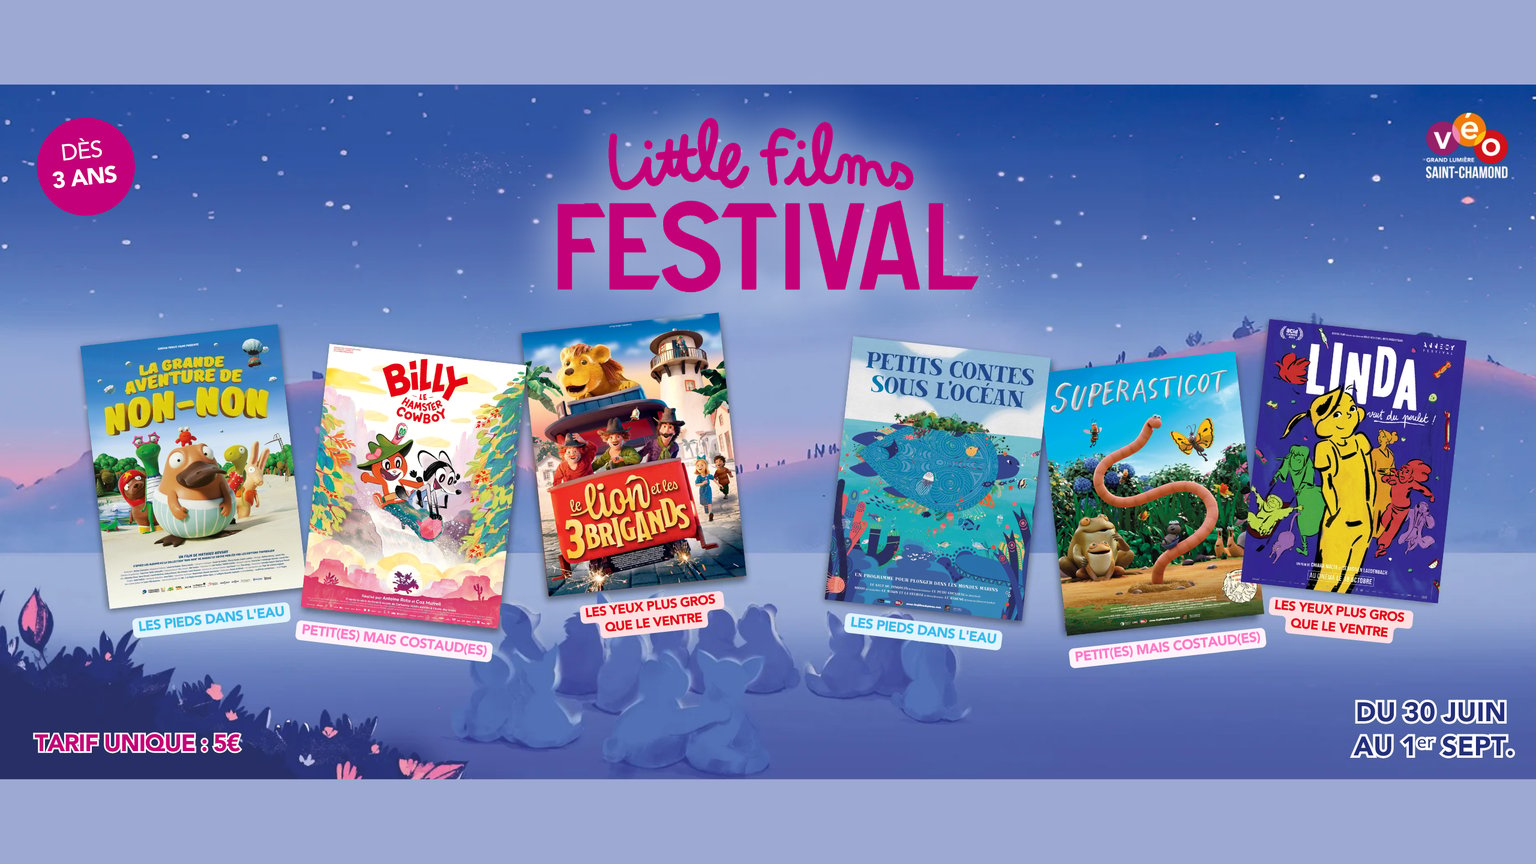 Little films festival